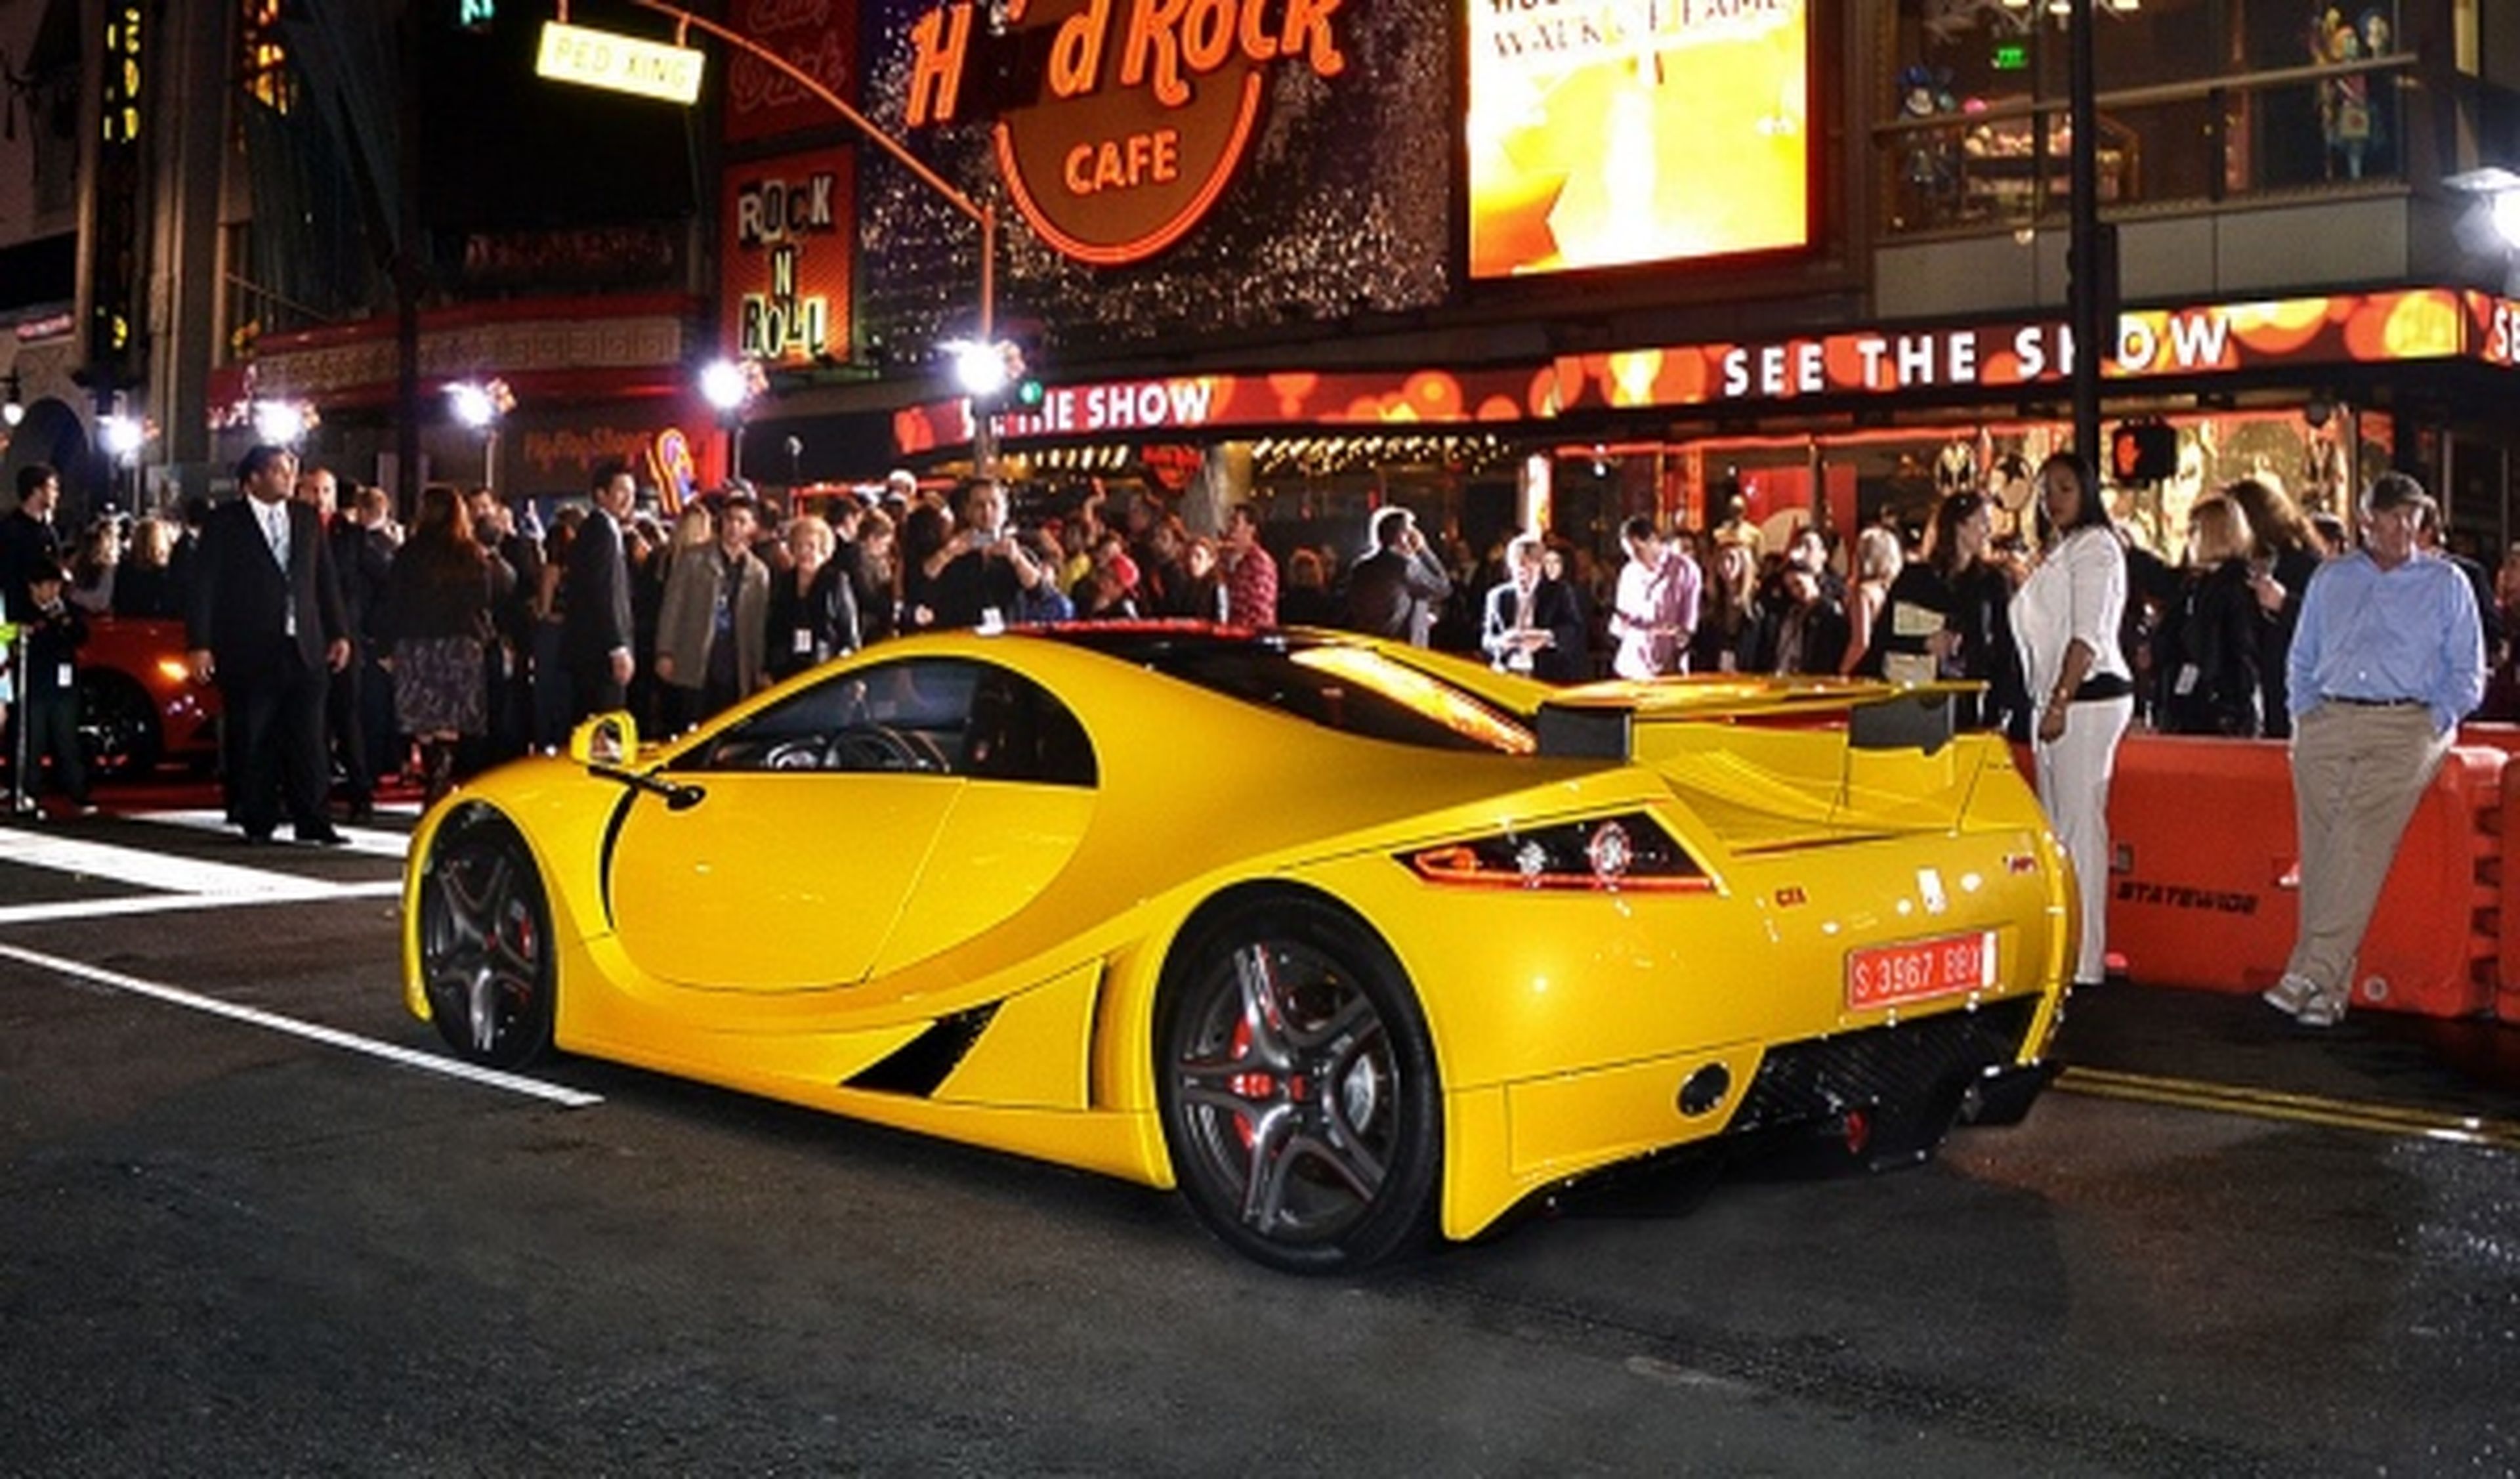 El GTA Spano, estrella en el estreno de 'Need for Speed'